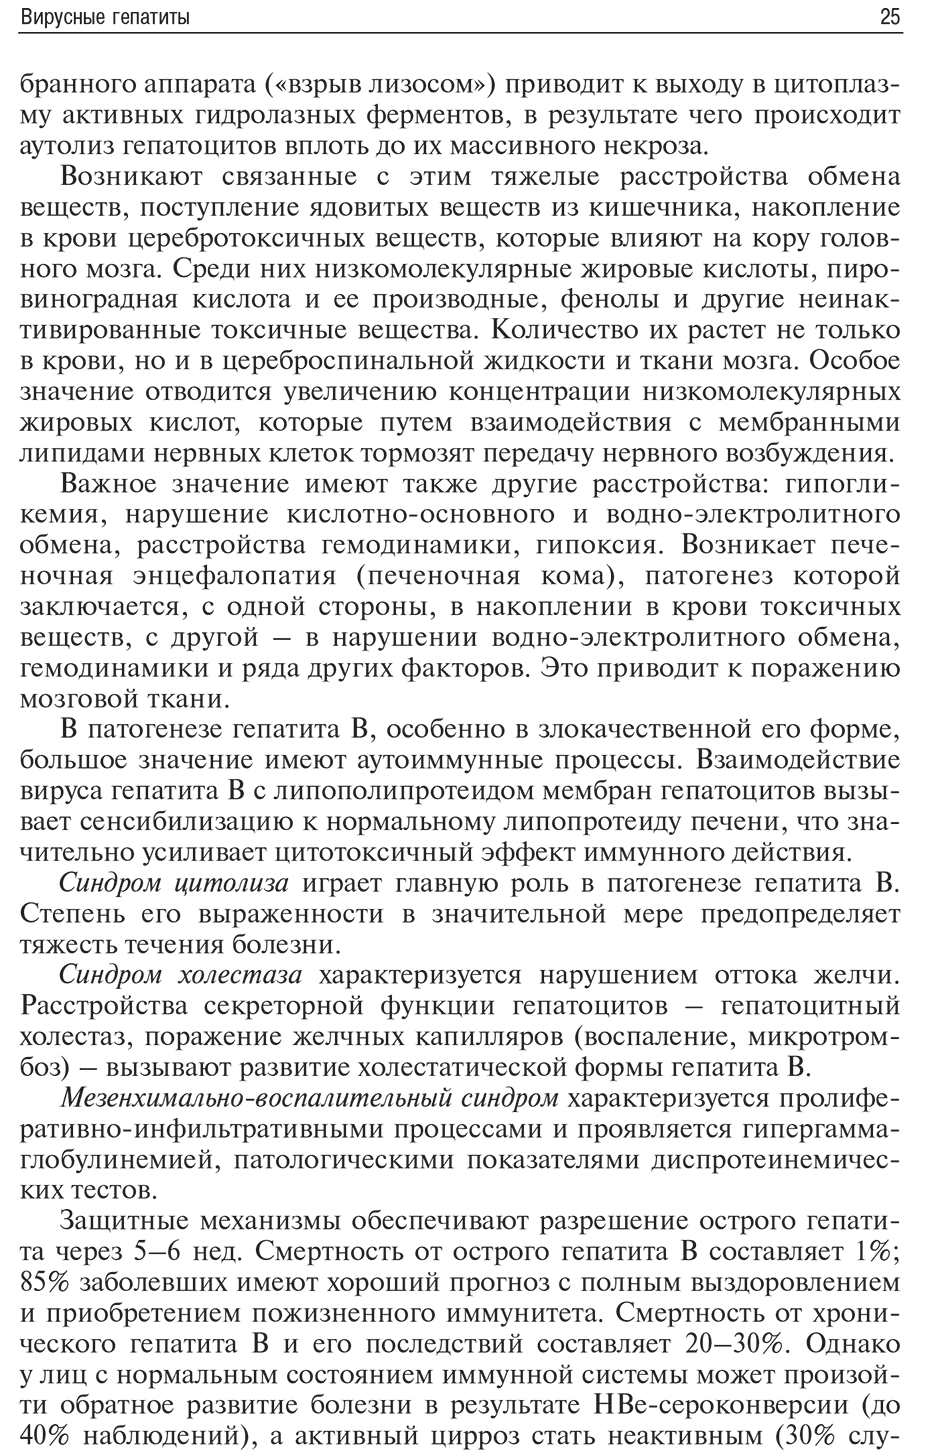 Пример страницы из книги "Инфекционные болезни и беременность" - Климов В. А.